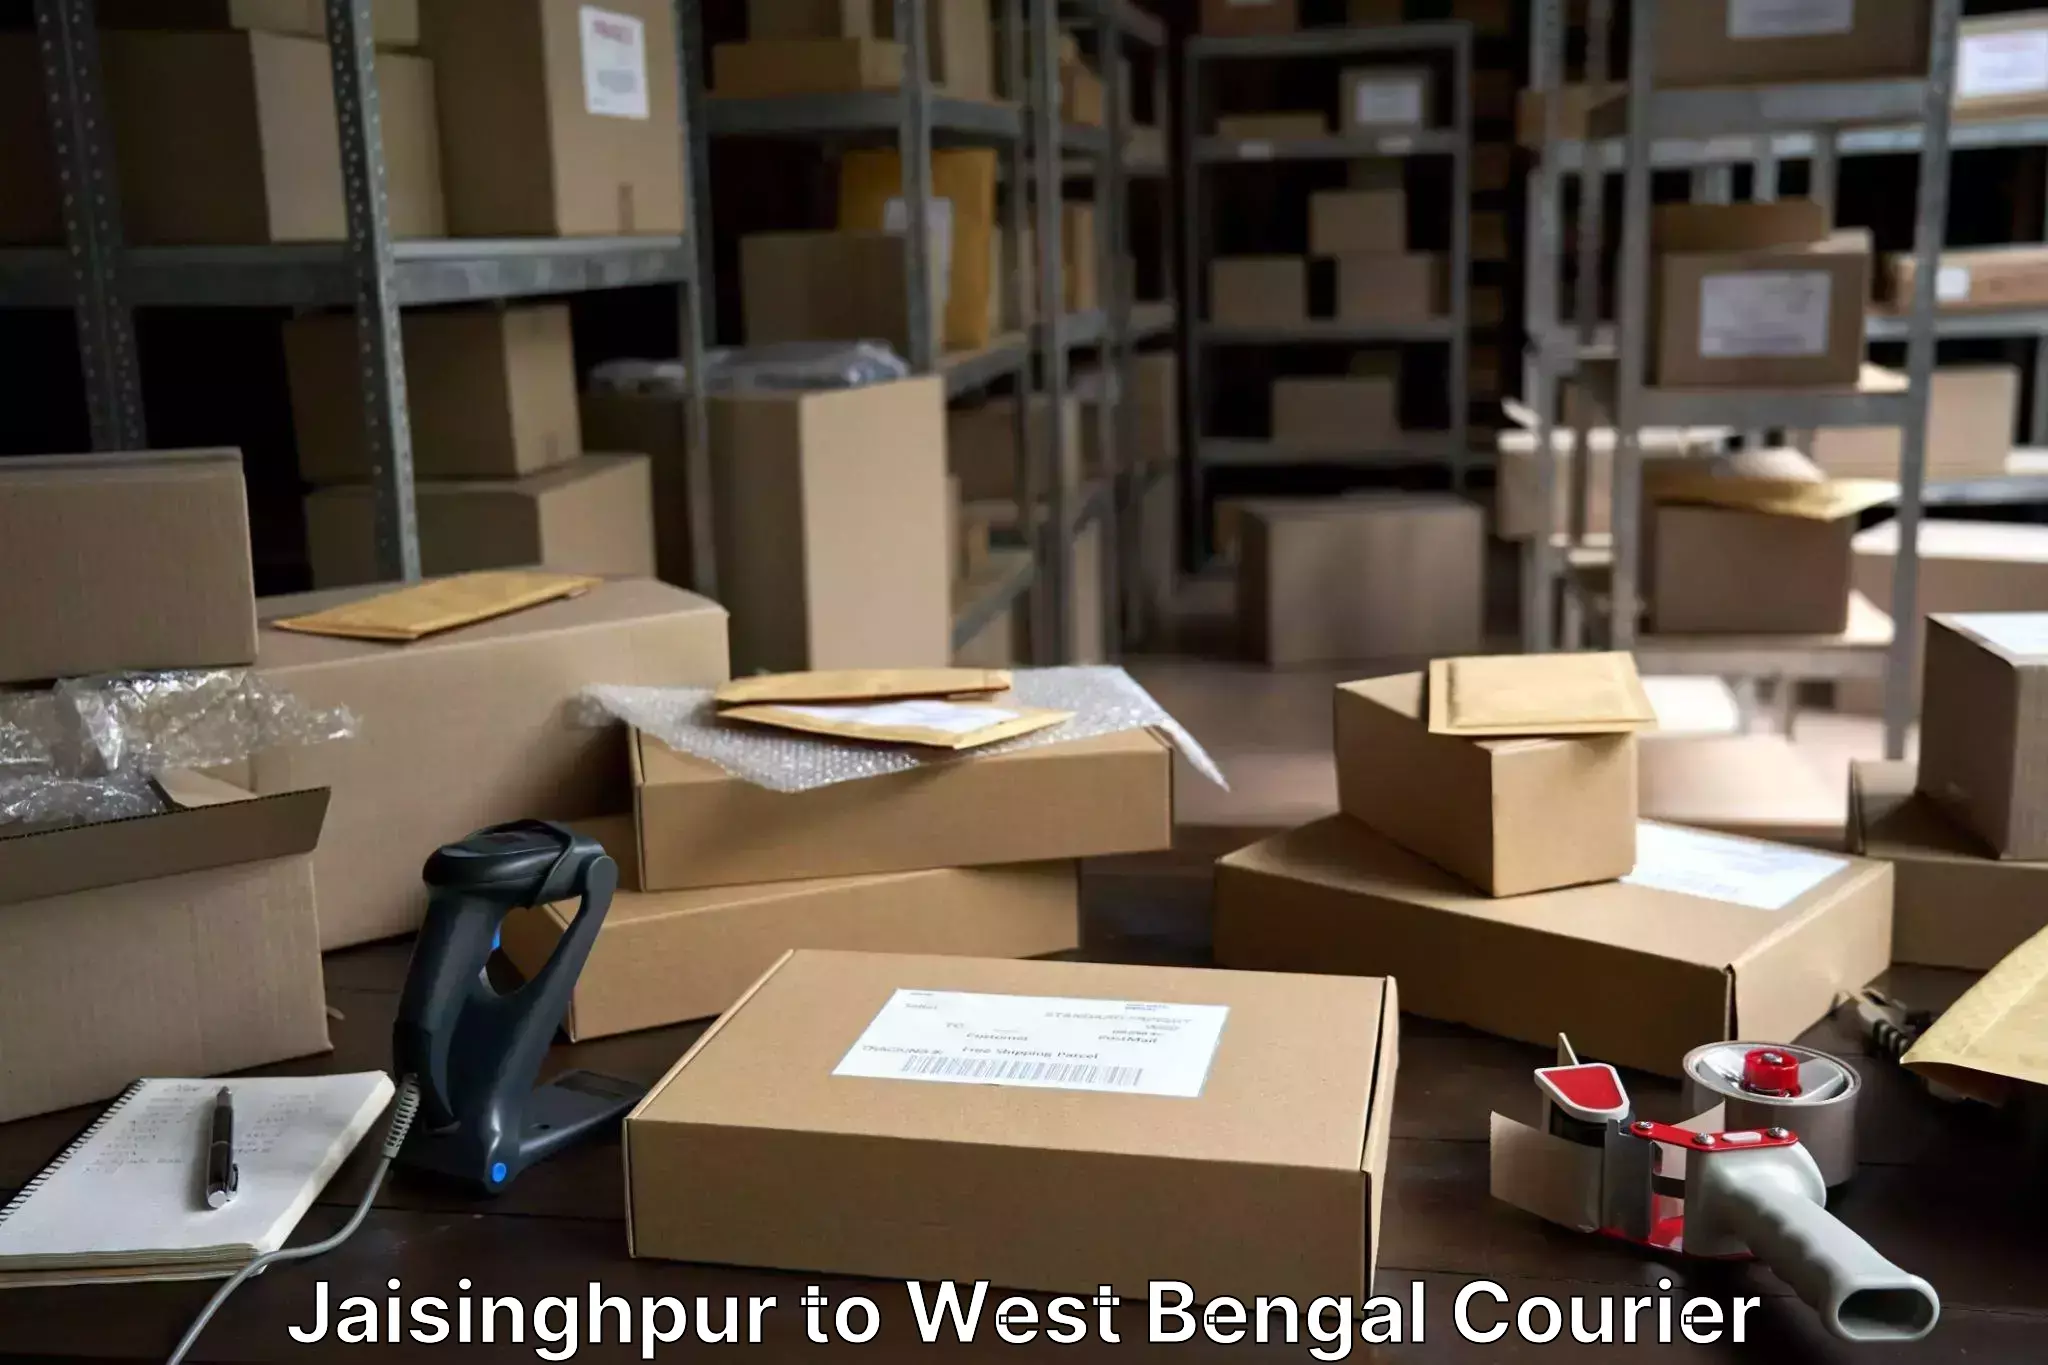 Baggage shipping service Jaisinghpur to Baghmundi